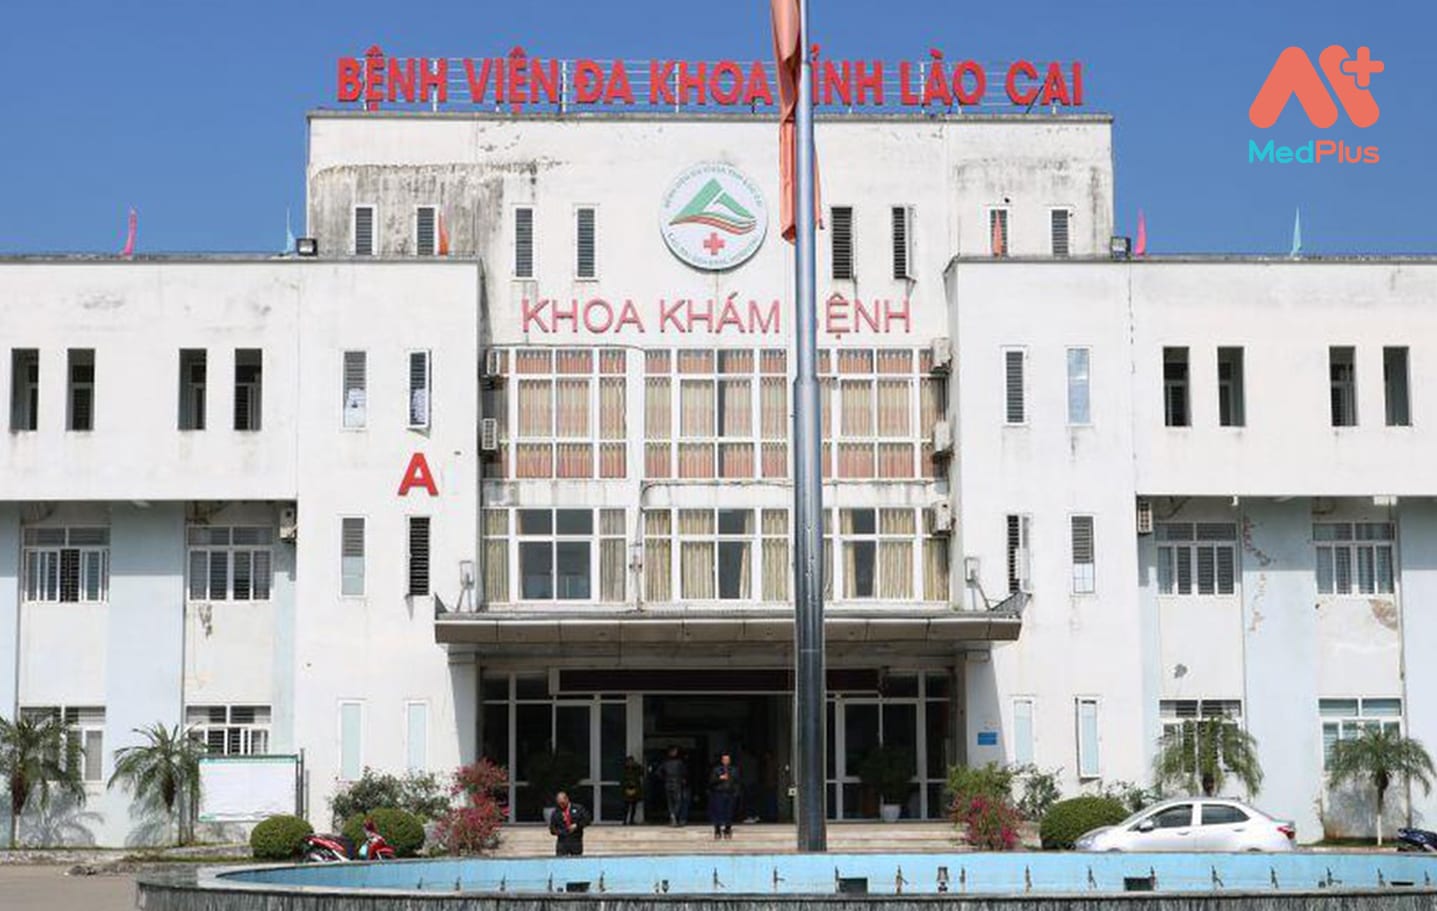 Quy trình khám chữa bệnh của Bệnh viện đa khoa tỉnh Lào Cai